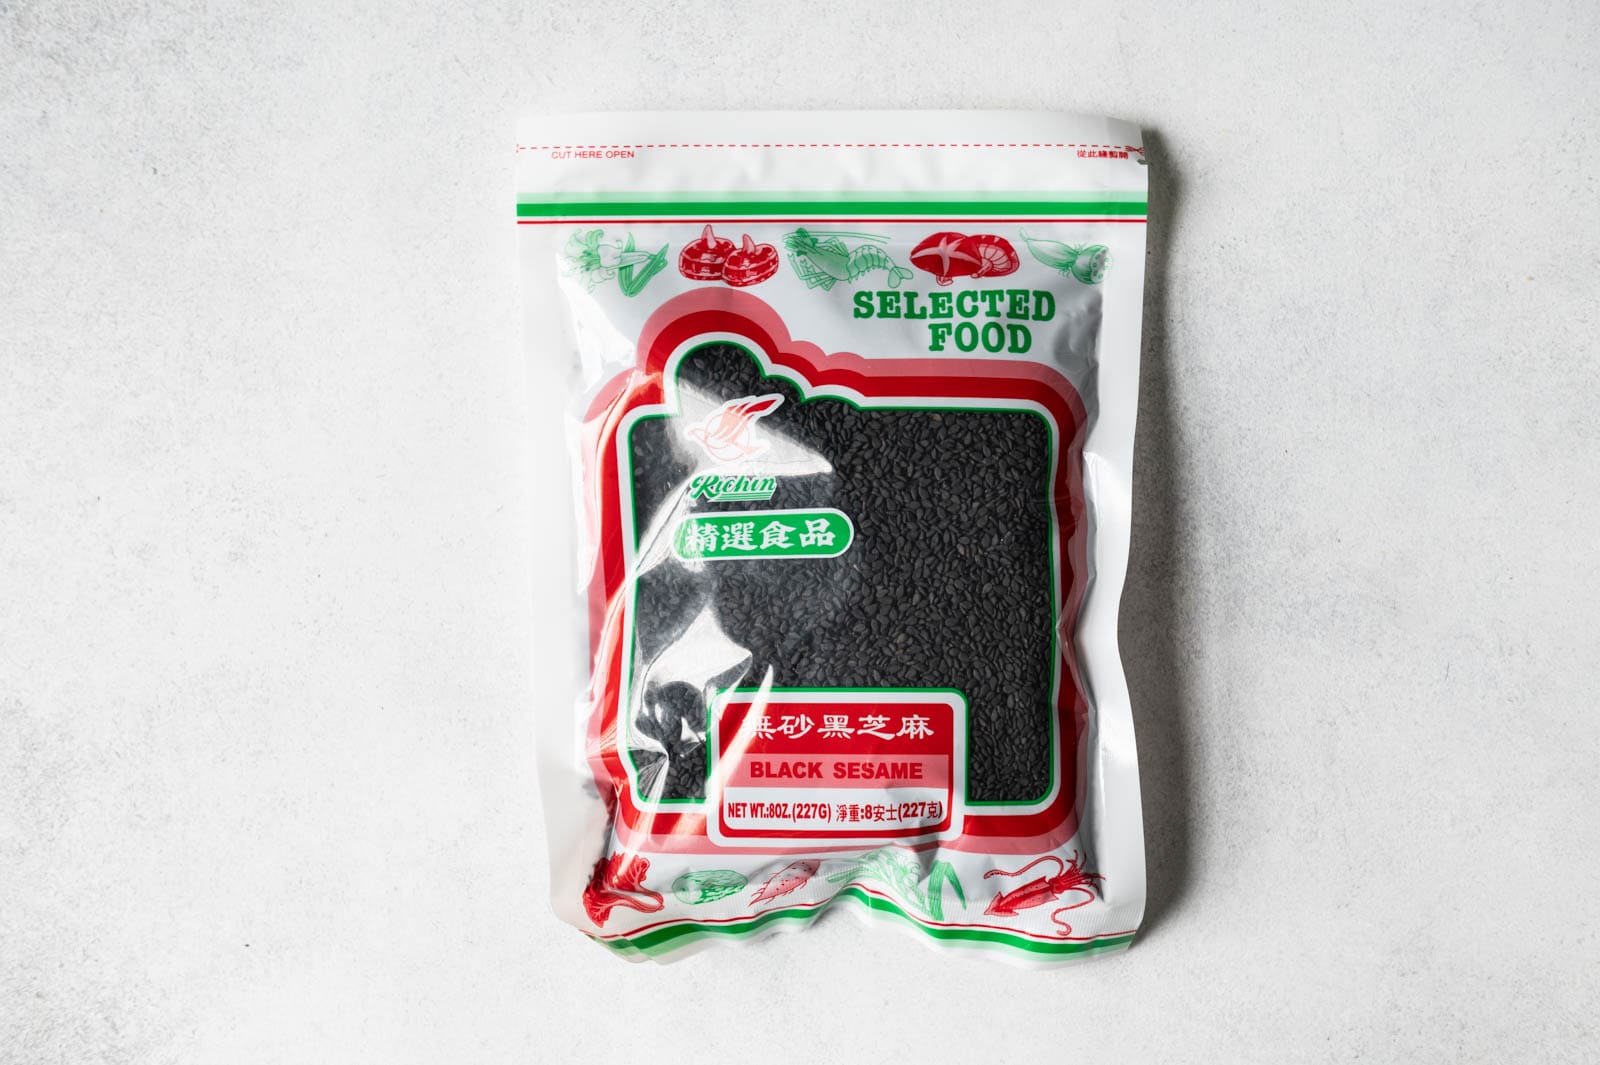 Bag of black sesame seeds